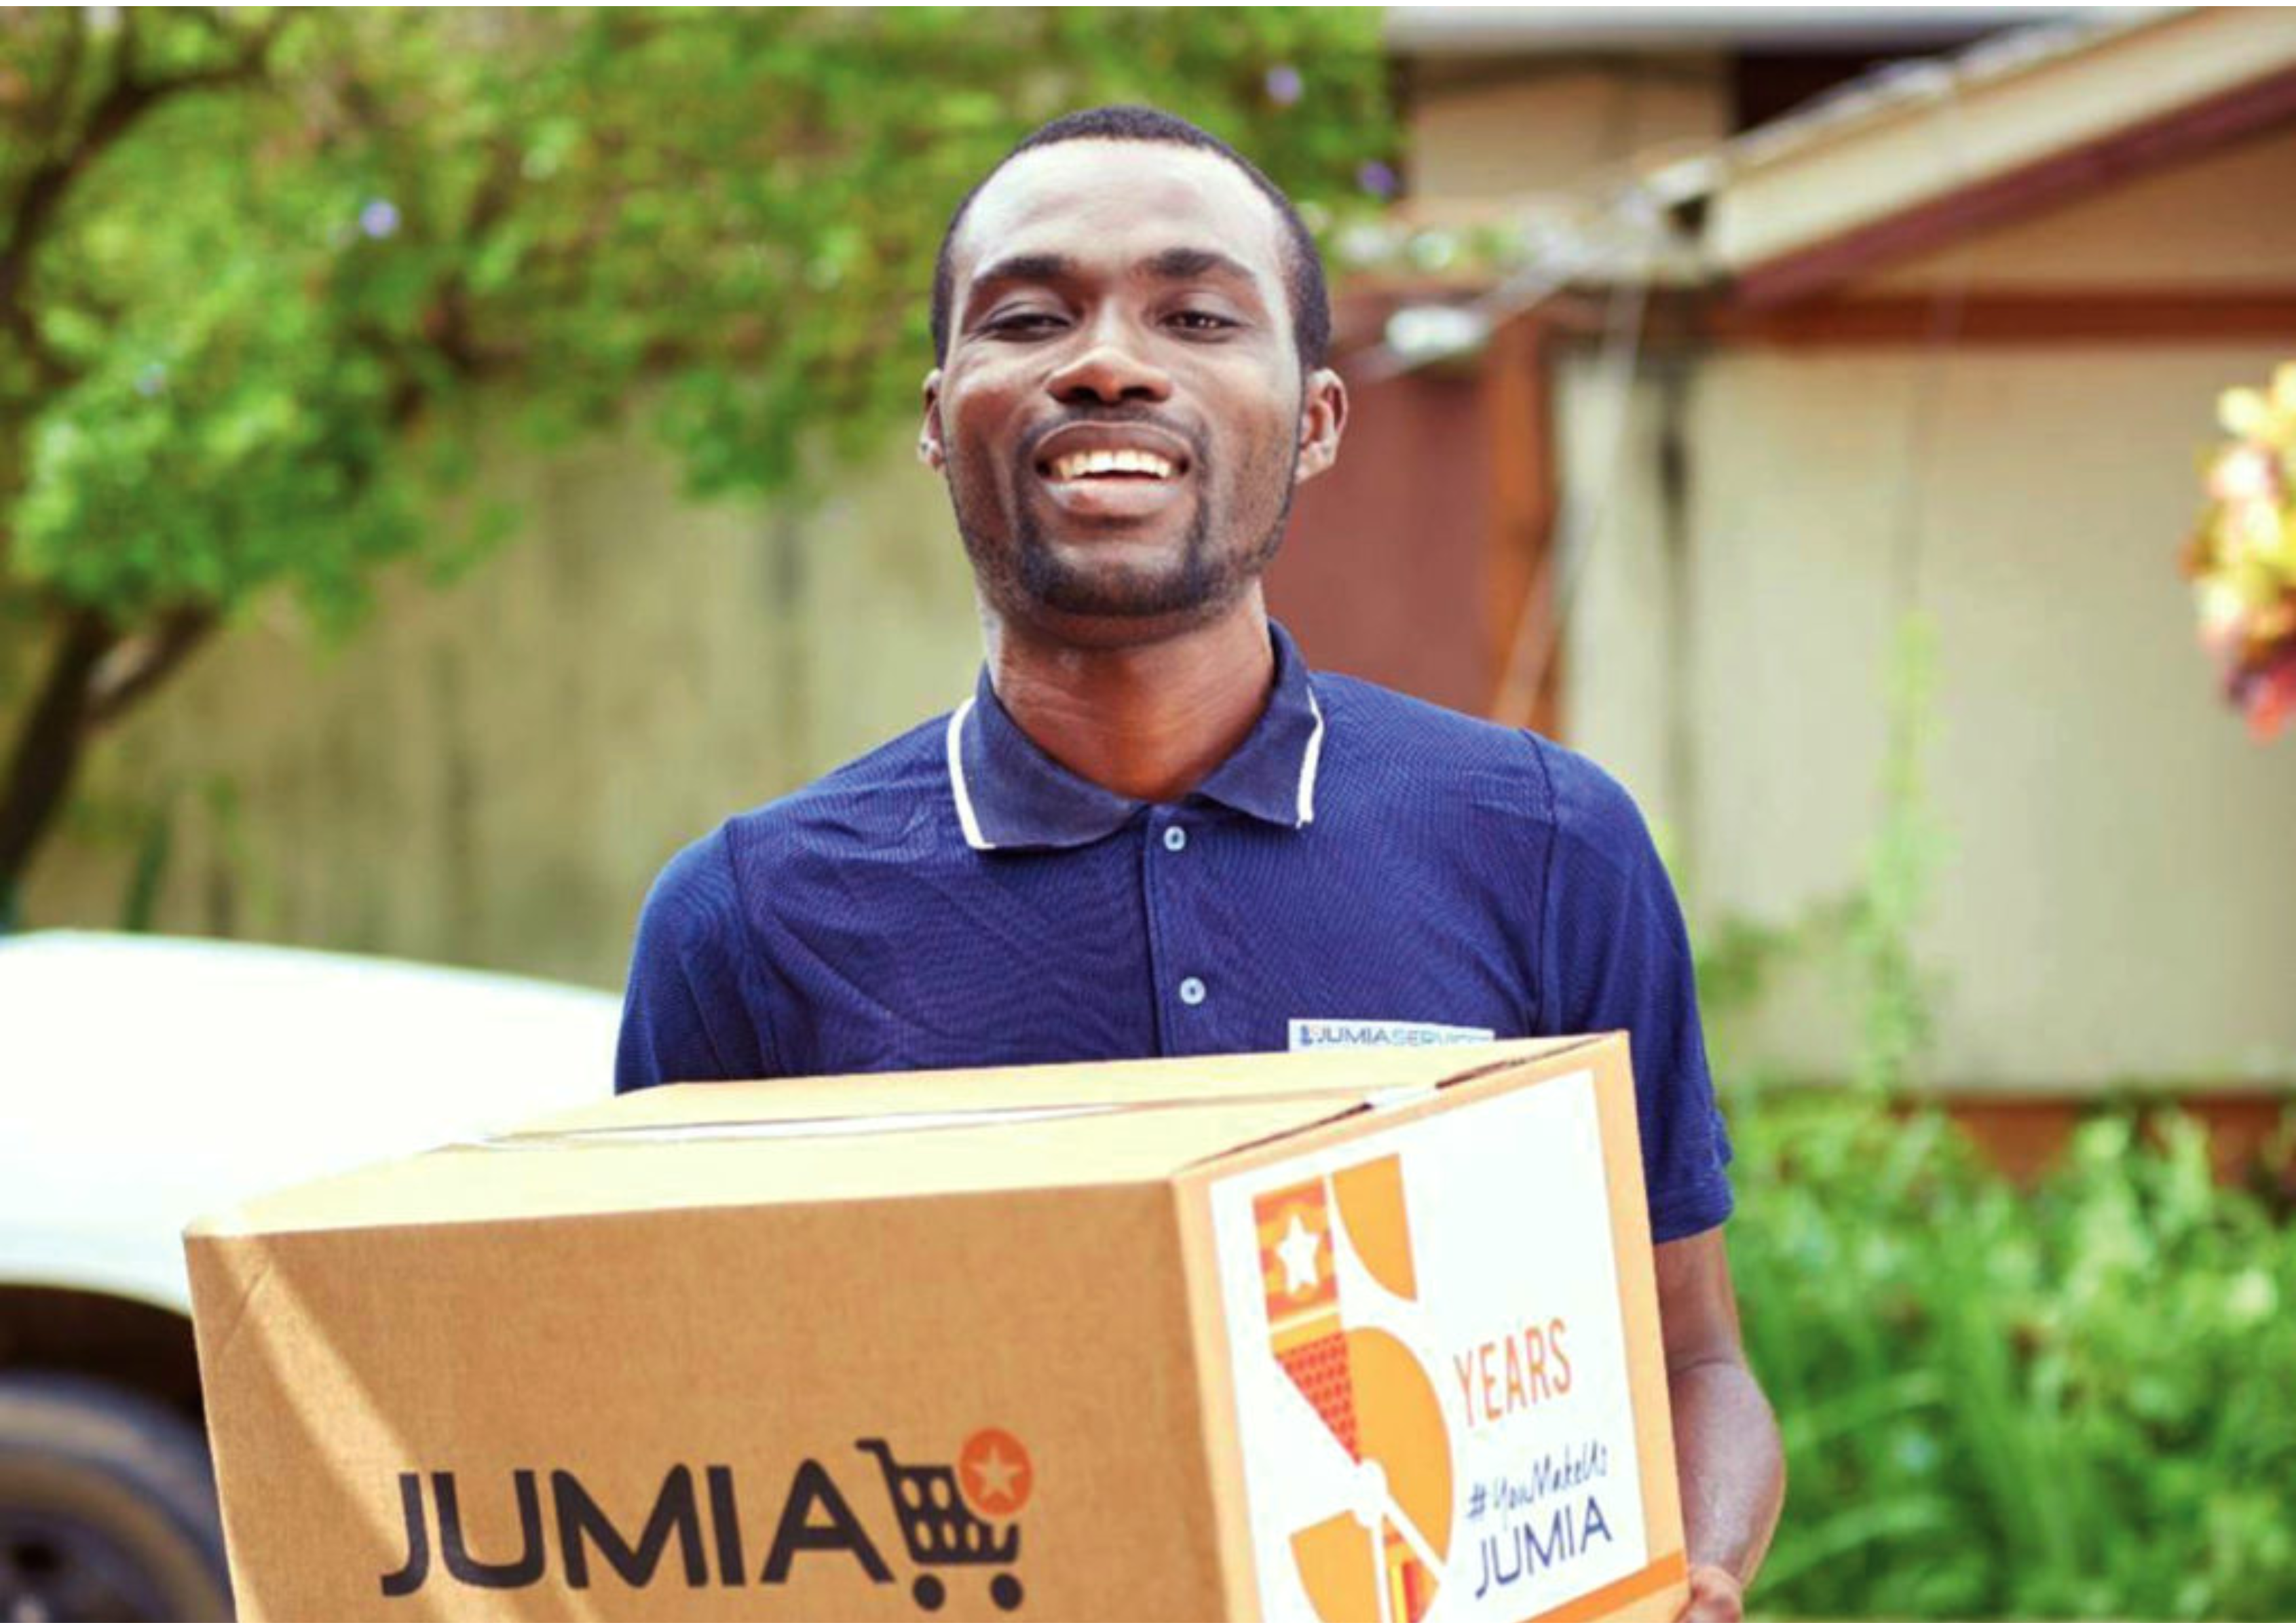 African online retailer Jumia